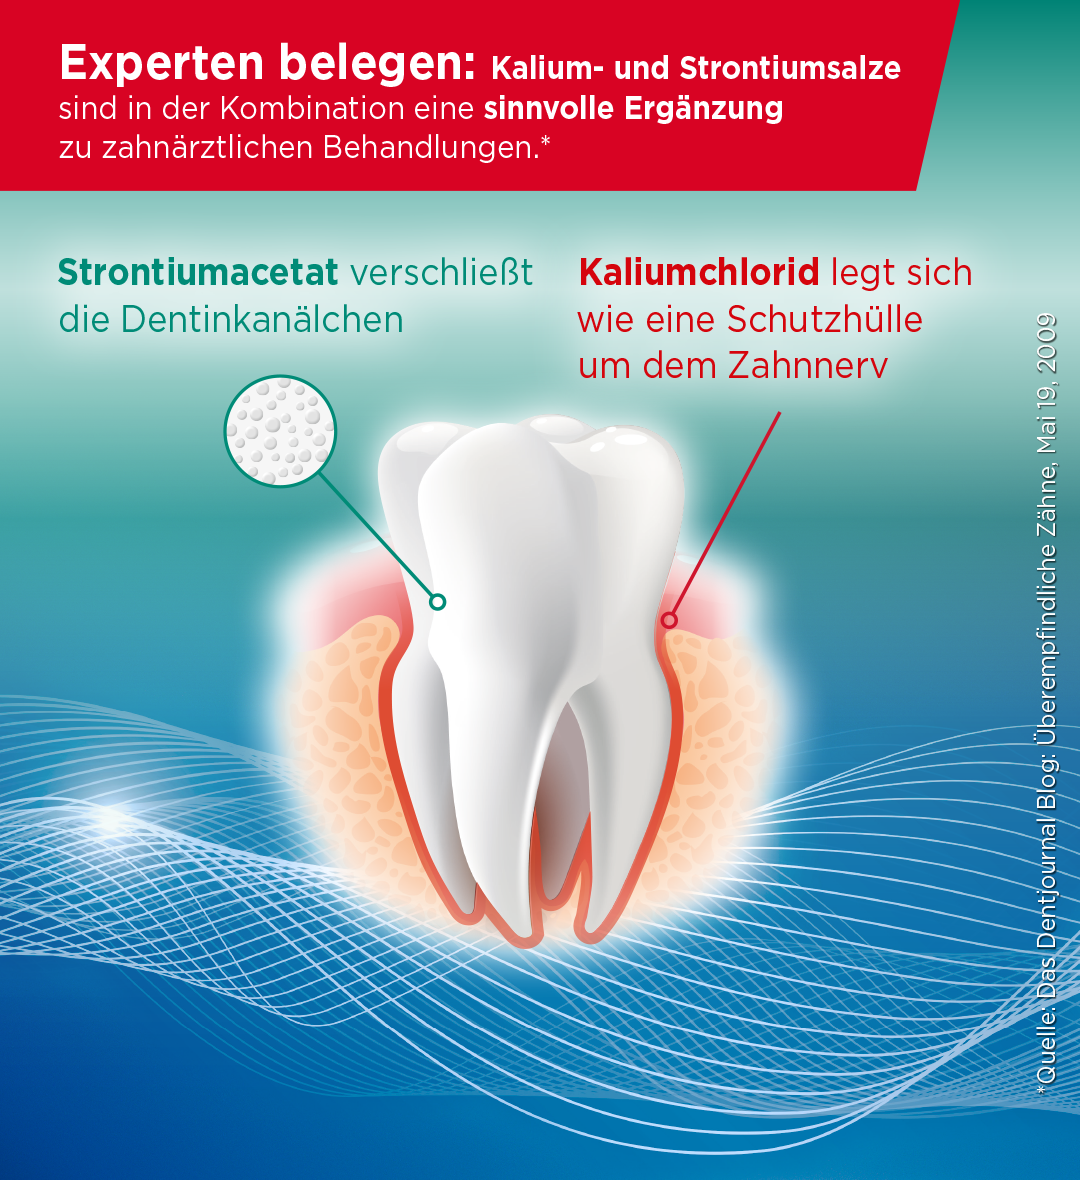 LACALUT® sensitiv Remineralisierung & Sanftes Weiß Zahncreme